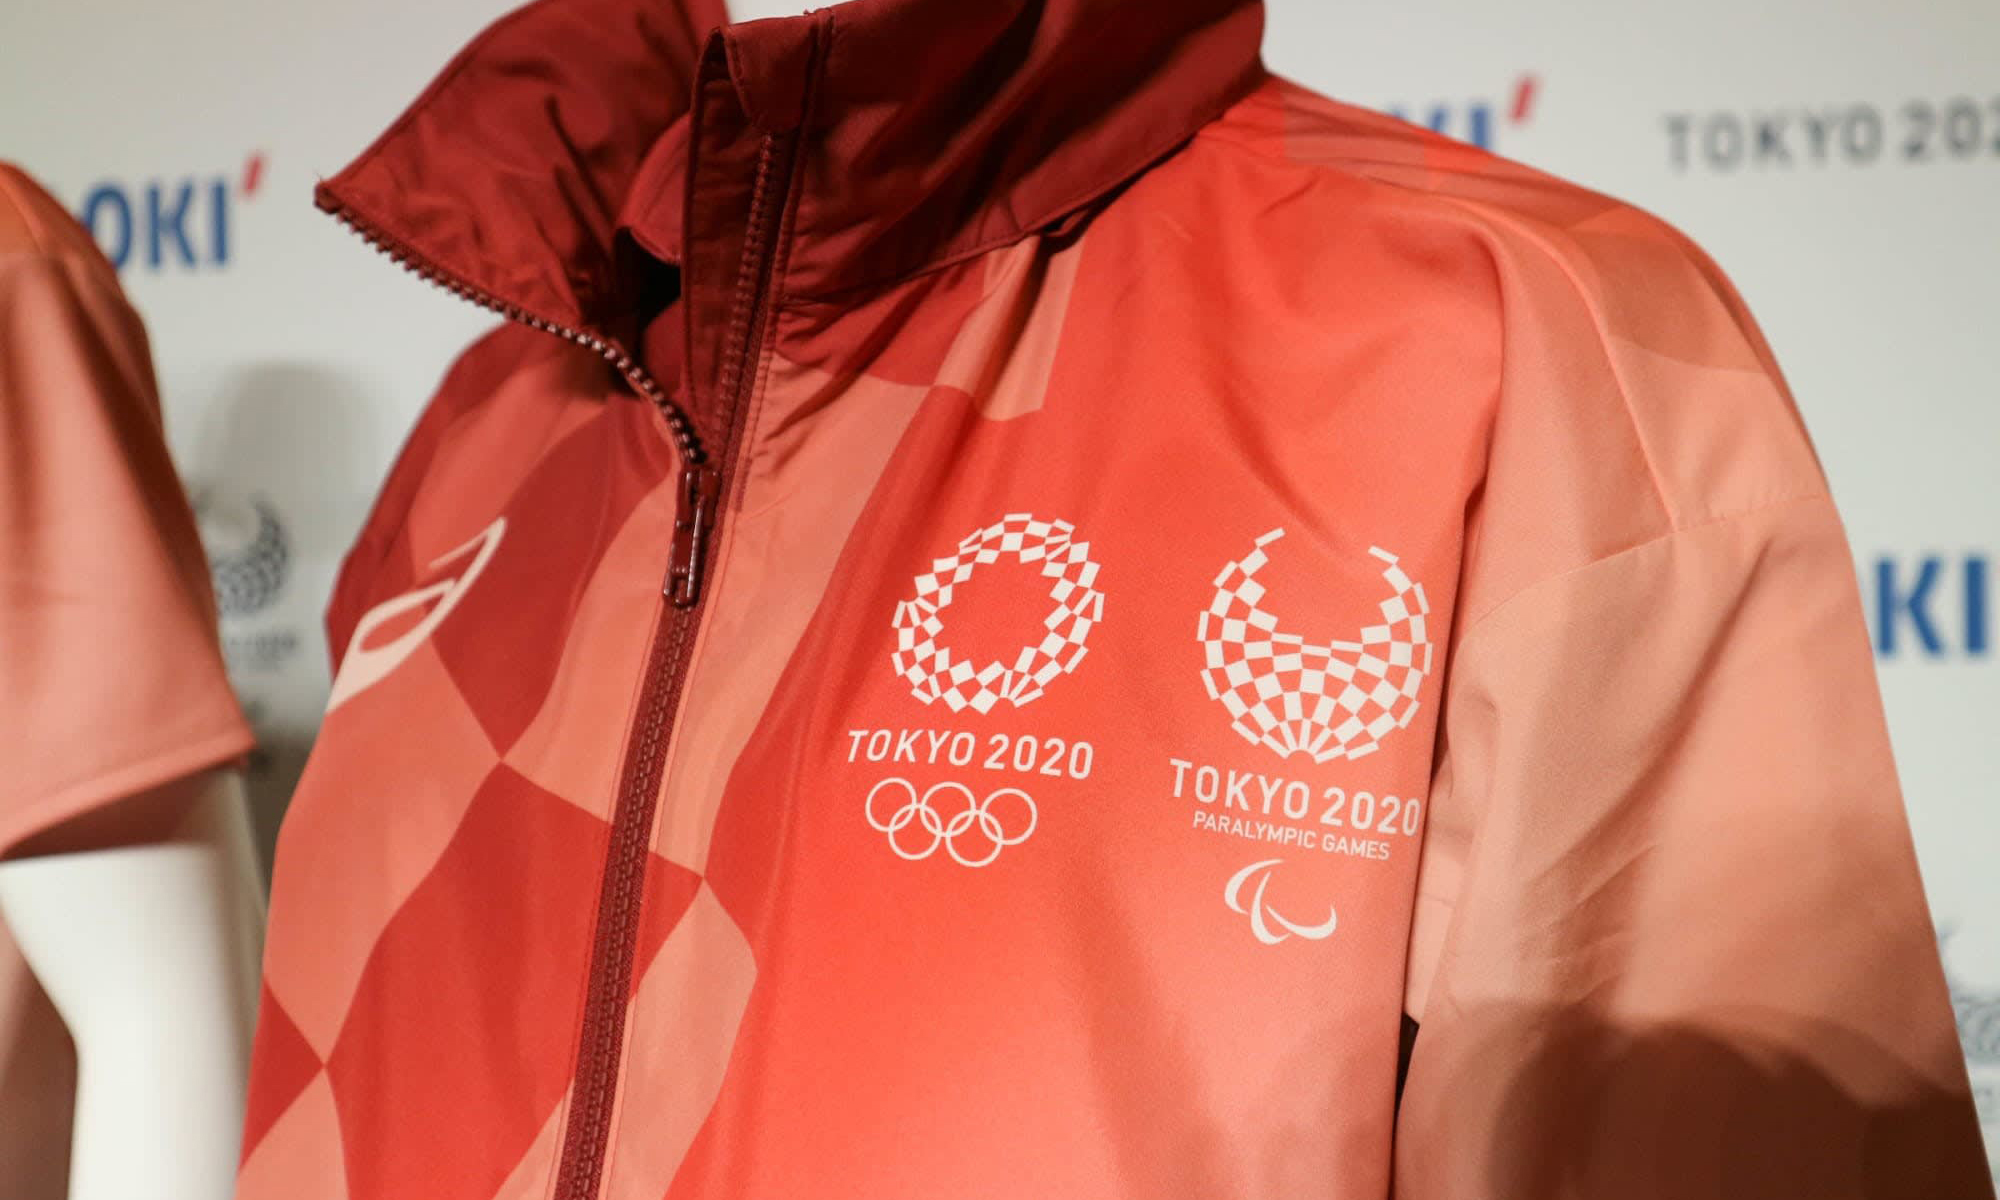 奥运会虽然推迟，但「TOKYO 2020」名称暂时不变